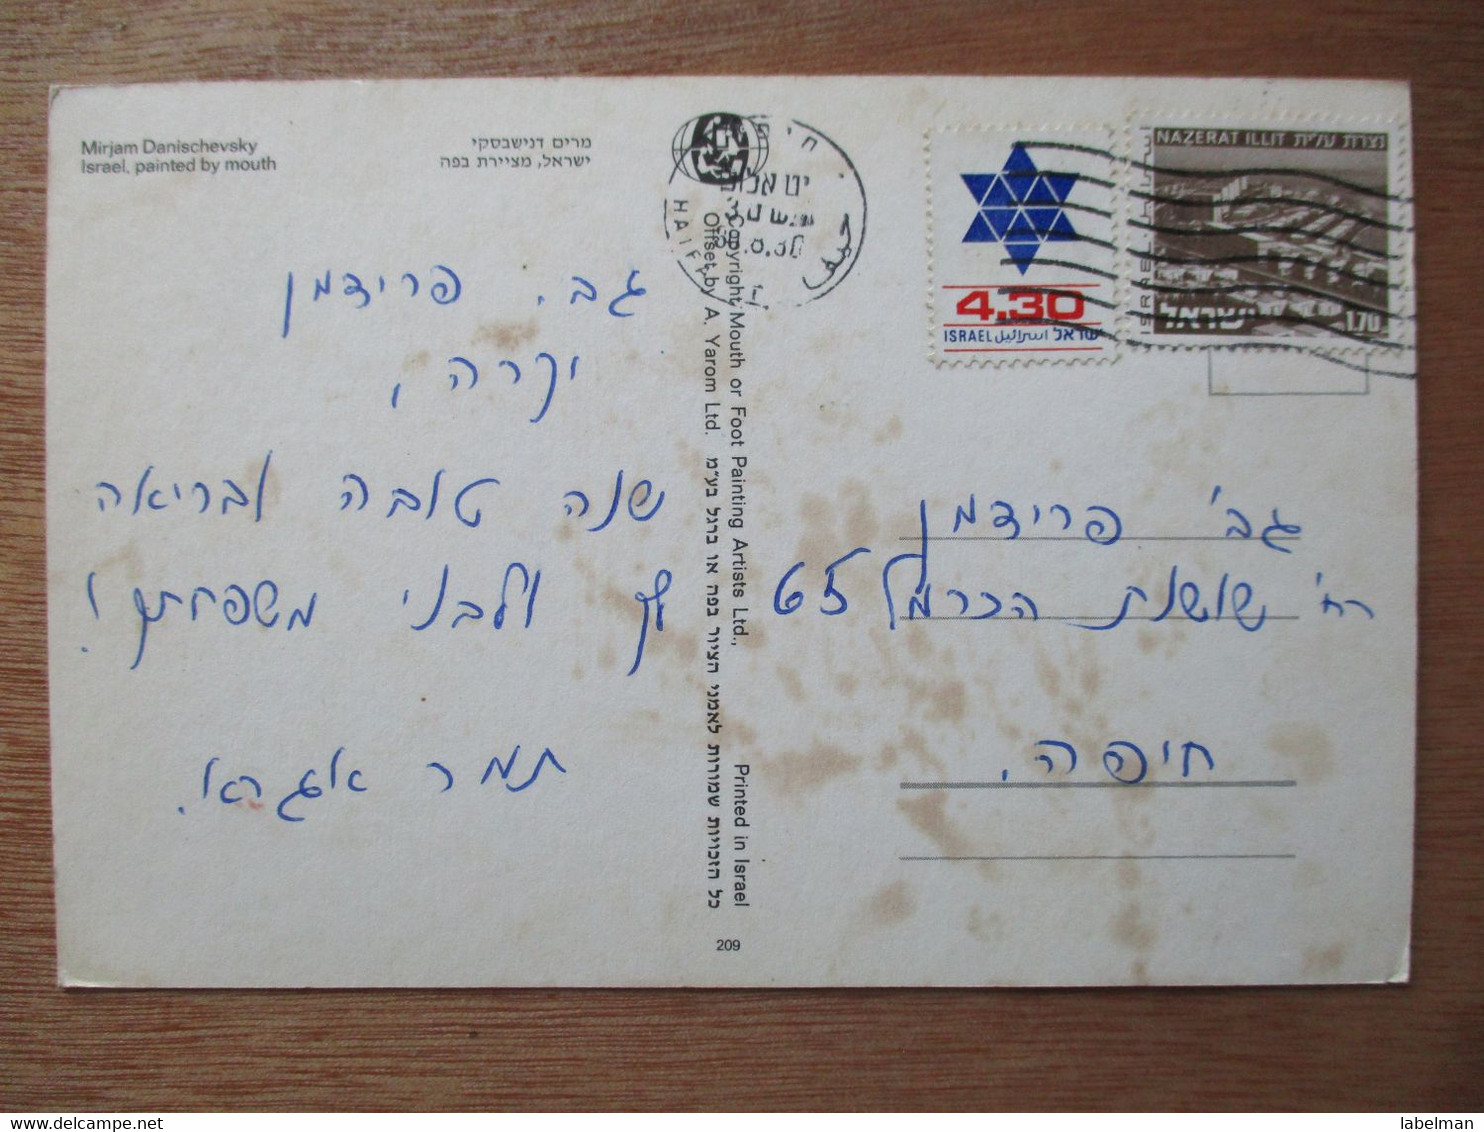 ISRAEL MIRJAM DANISCHEVSKY MOUTH FOOT PAINTER ARTIST ART PICTURE JUDAICA JEWISH CARD POSTCARD CARTOLINA ANSICHTSKARTE - Nouvel An